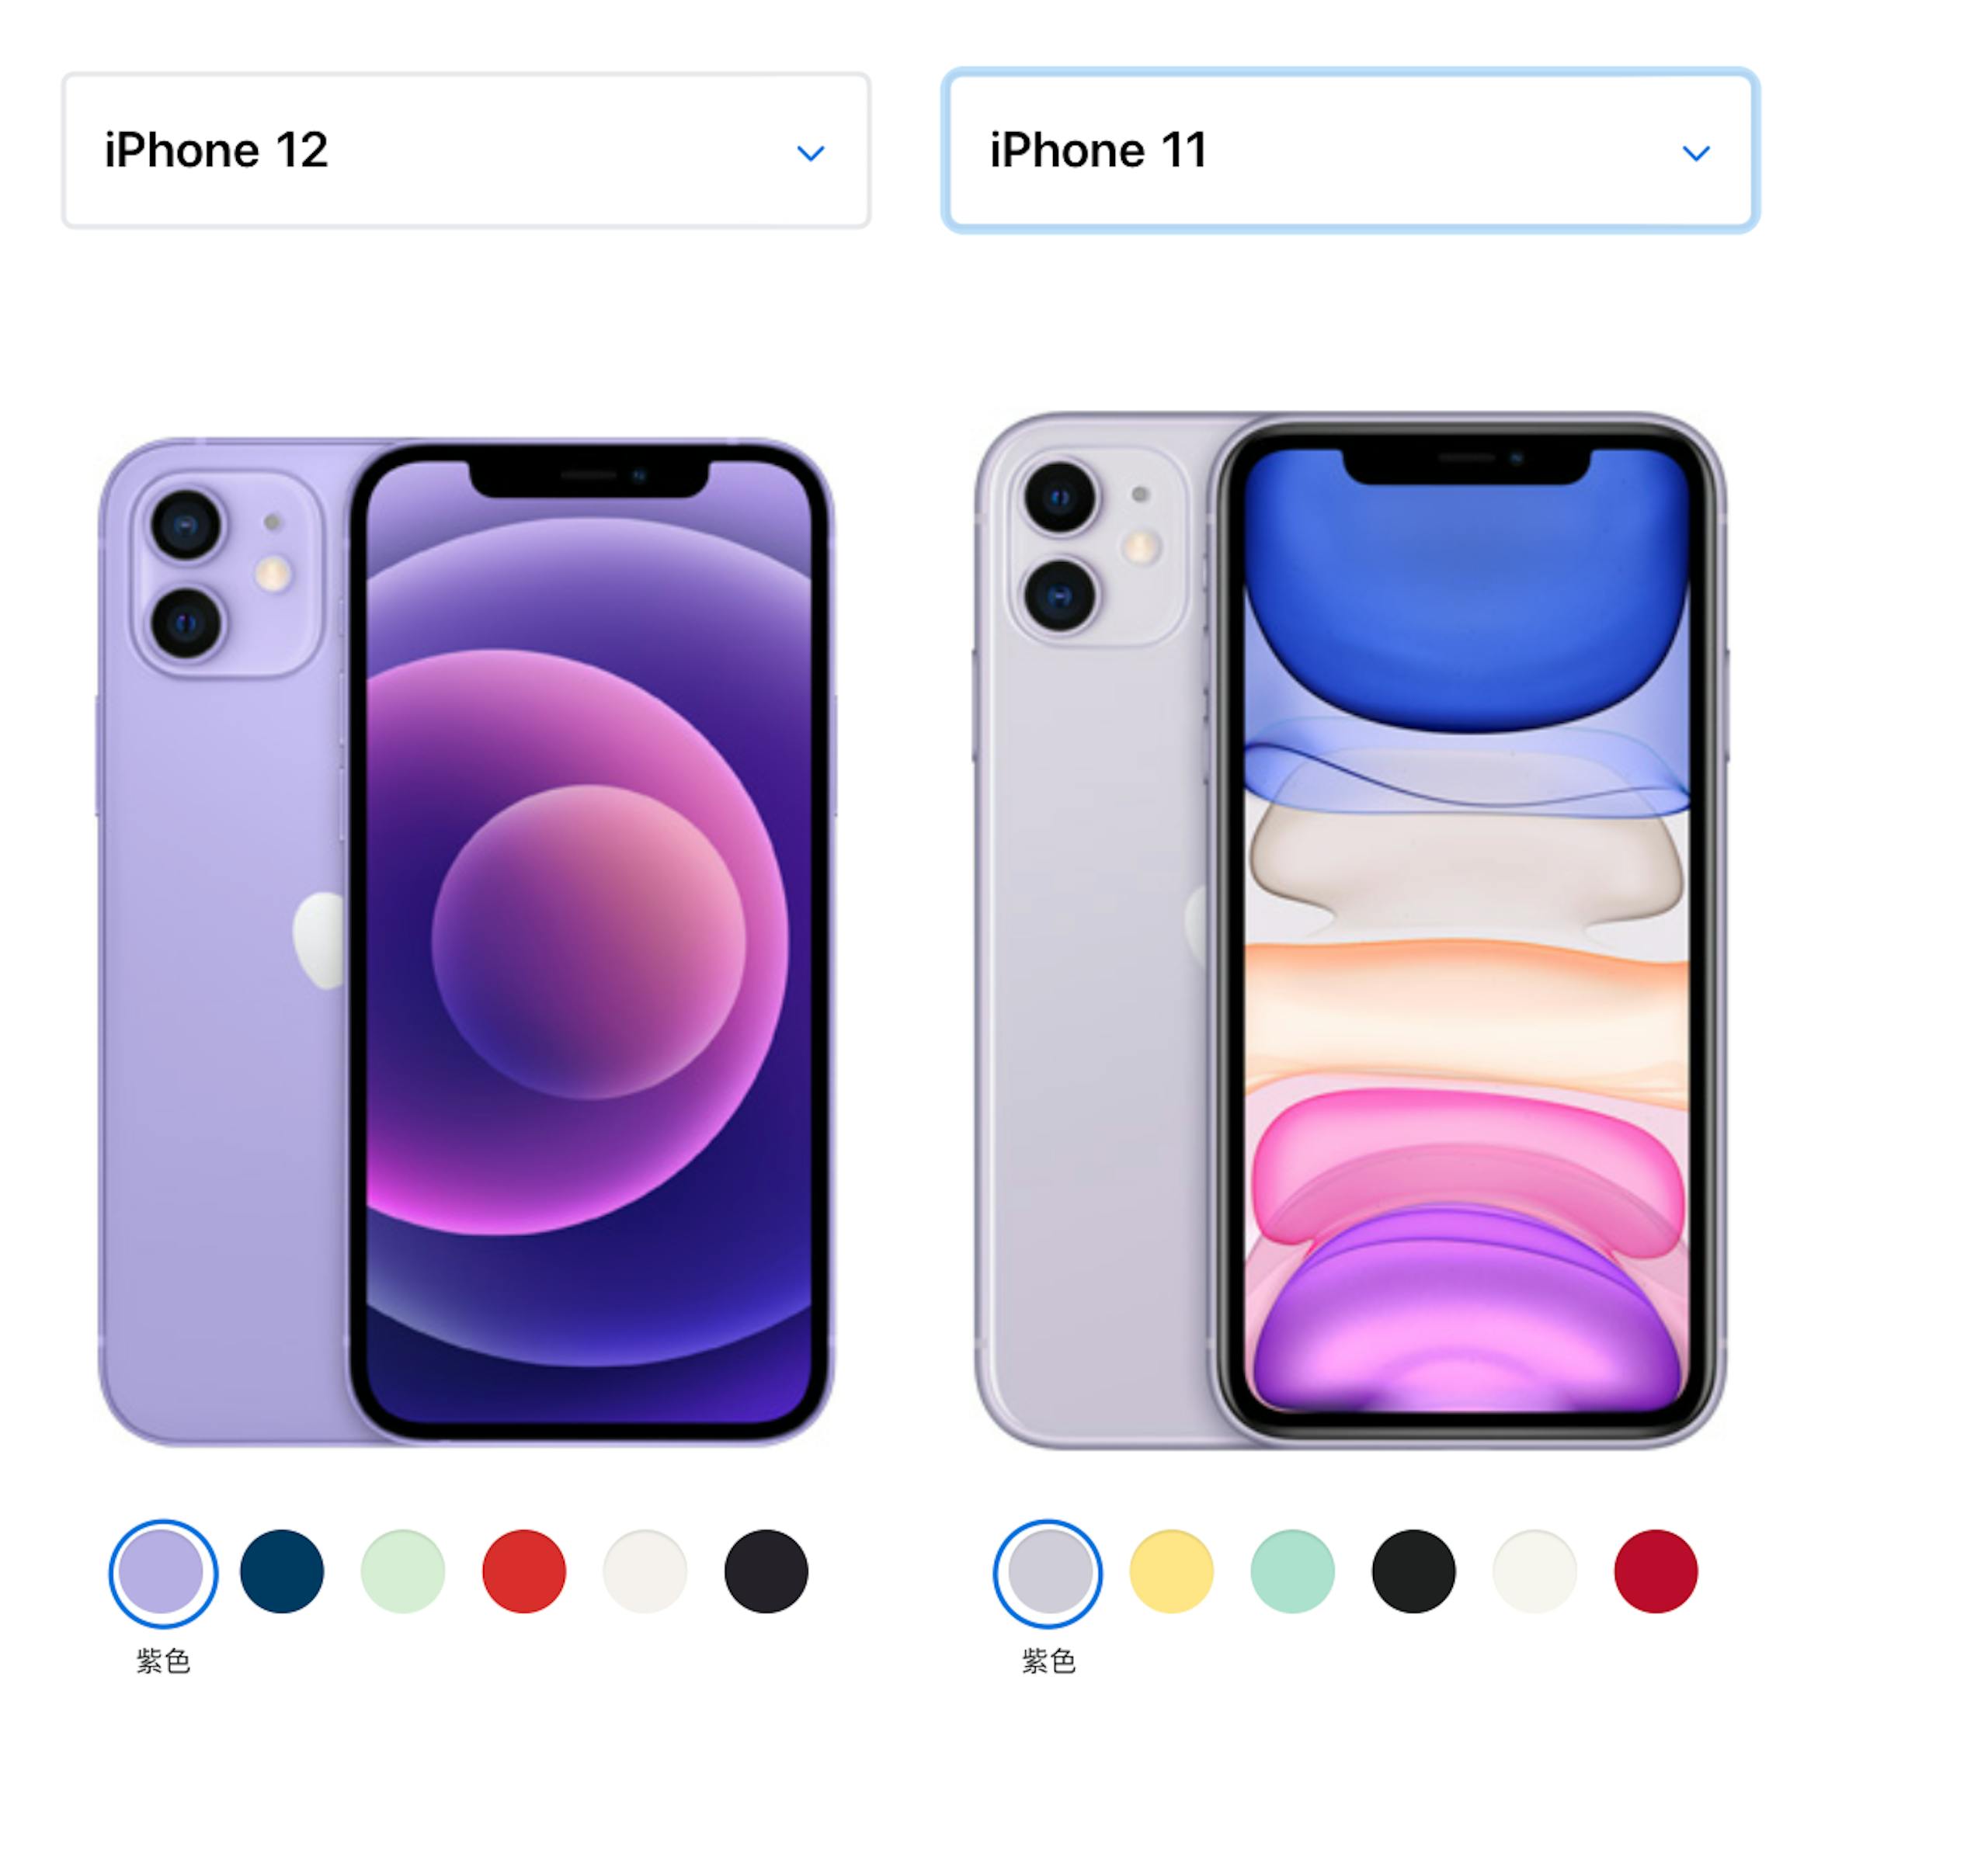 開箱 全新紫色iphone 12 上手 比iphone 11 更濃直邊金屬框更質感 Inside